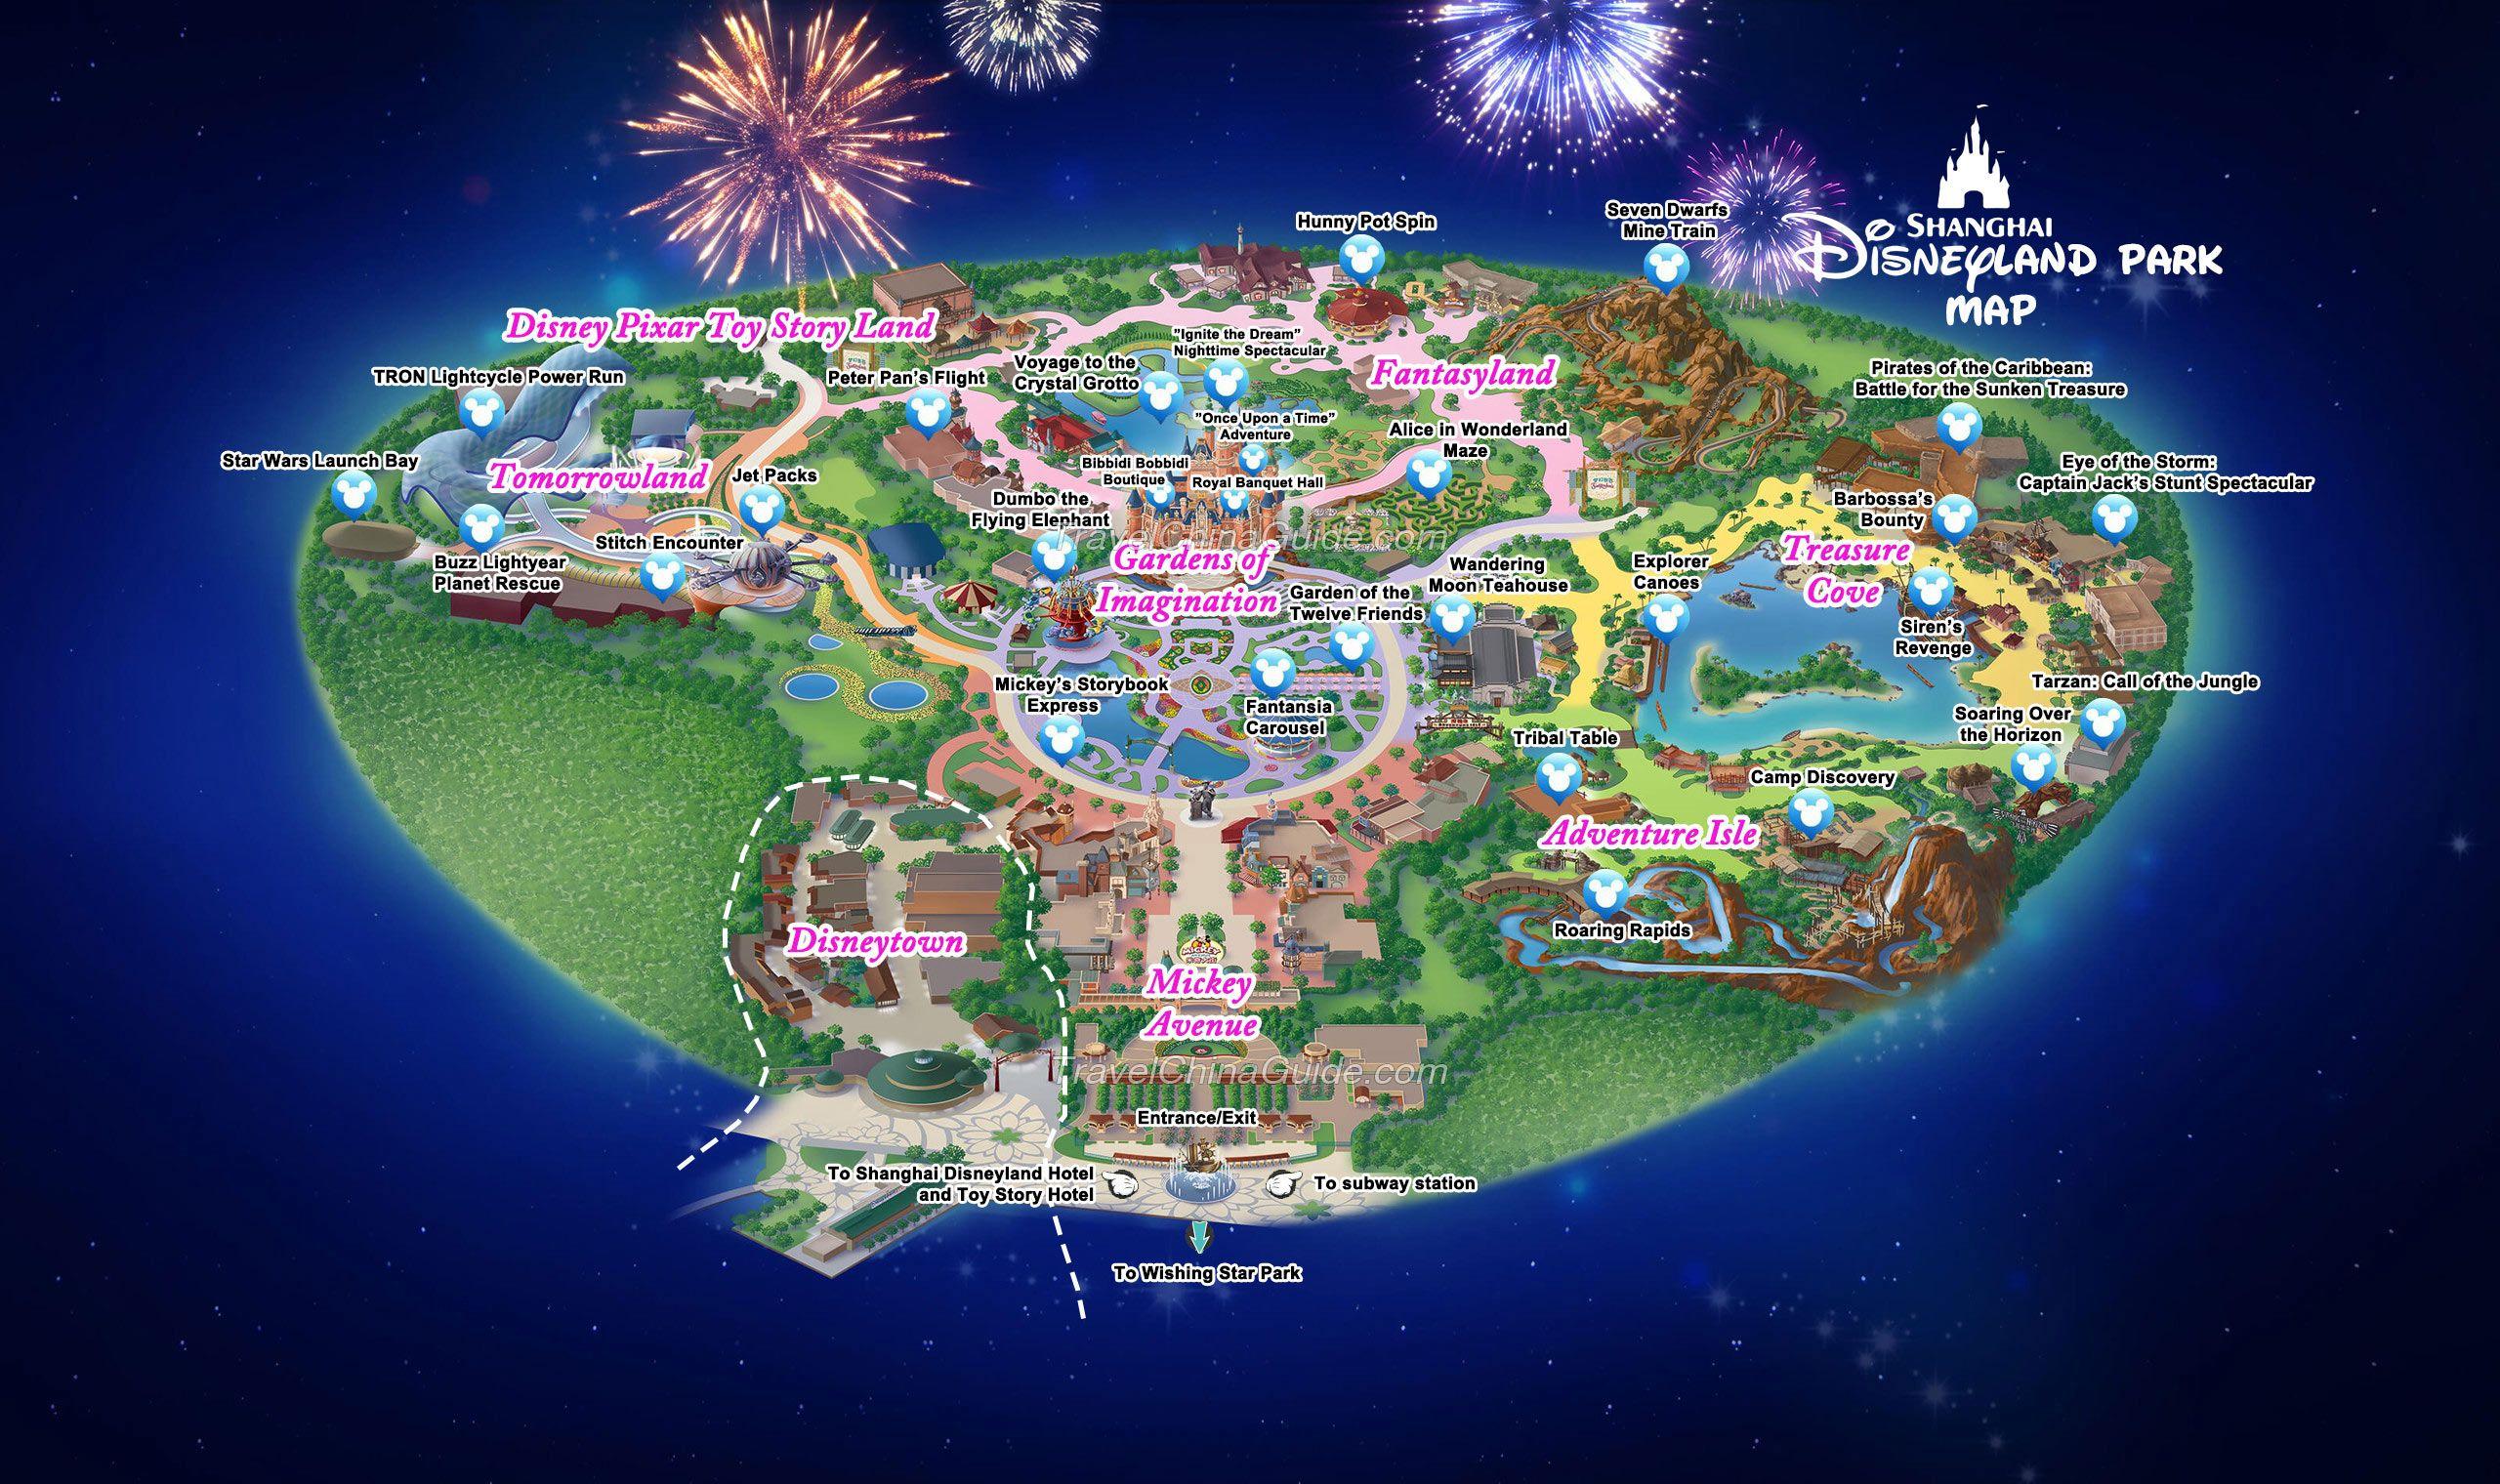 Shanghai Disneyland Logo - Shanghai Disneyland Park, Disney Resort, China